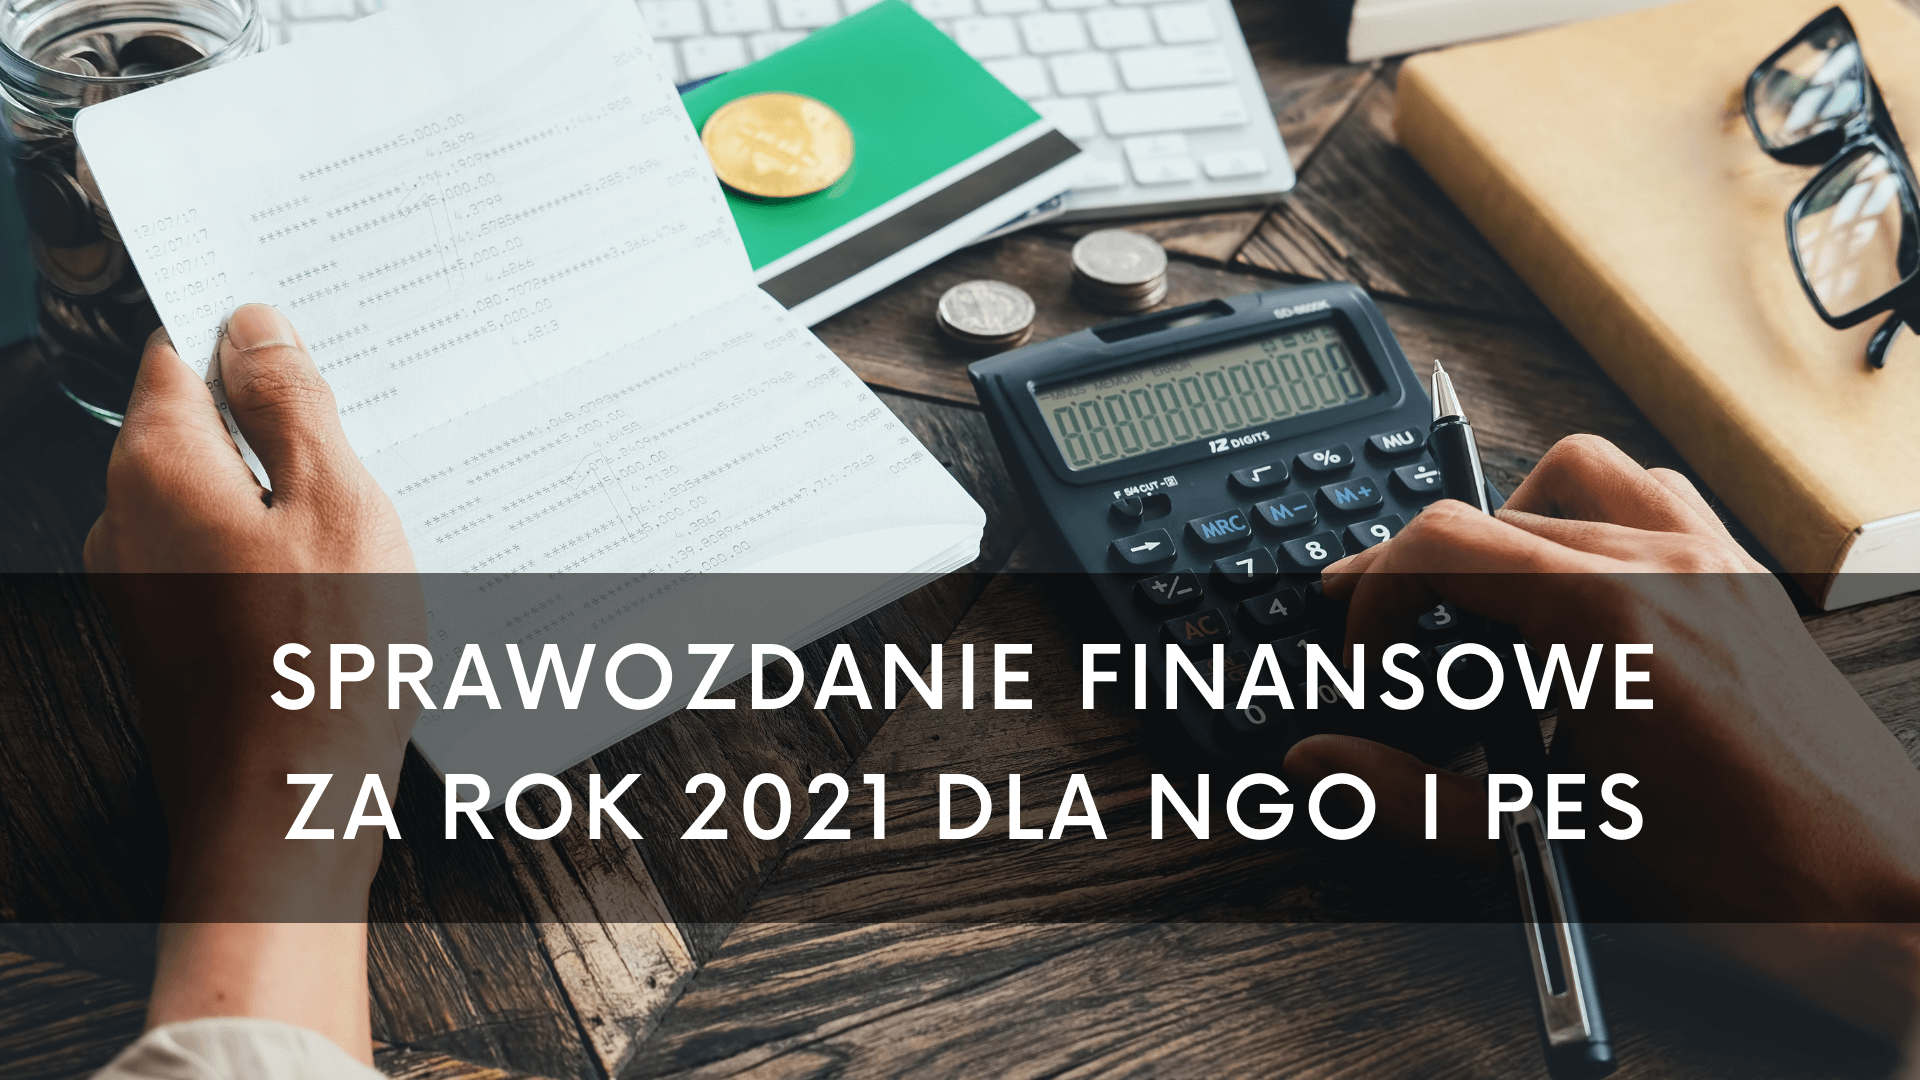 Sprawozdanie finansowe za 2021 rok dla NGO i PES